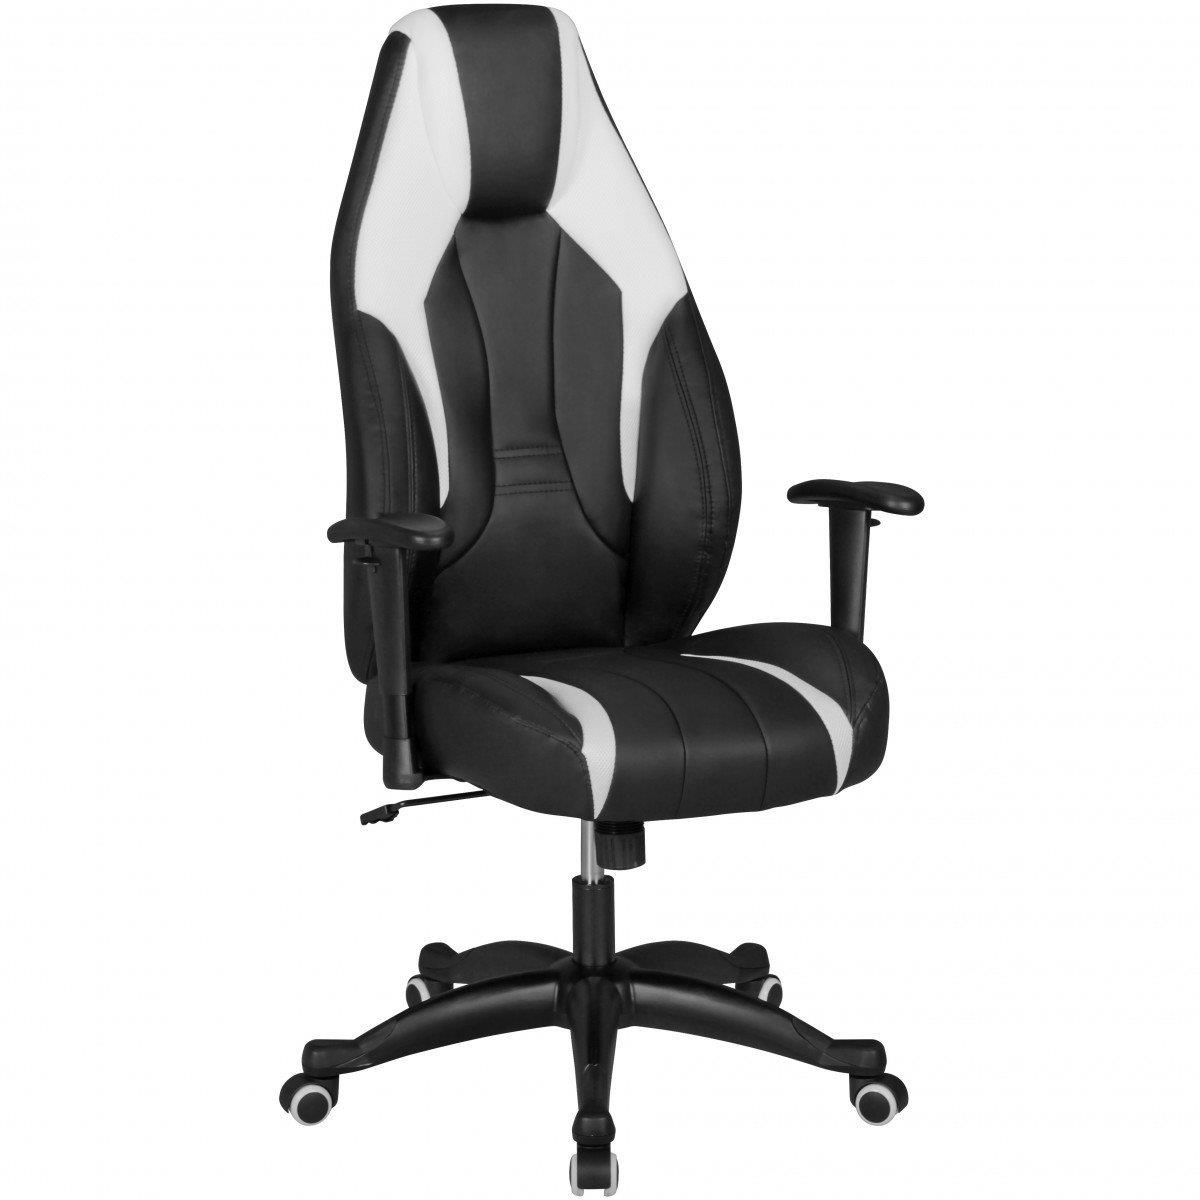 Gaming-Stuhl URKO, neigbare Rückenlehne, verstellbare Armlehnen, Lederbezug, Farben Schwarz / Weiß